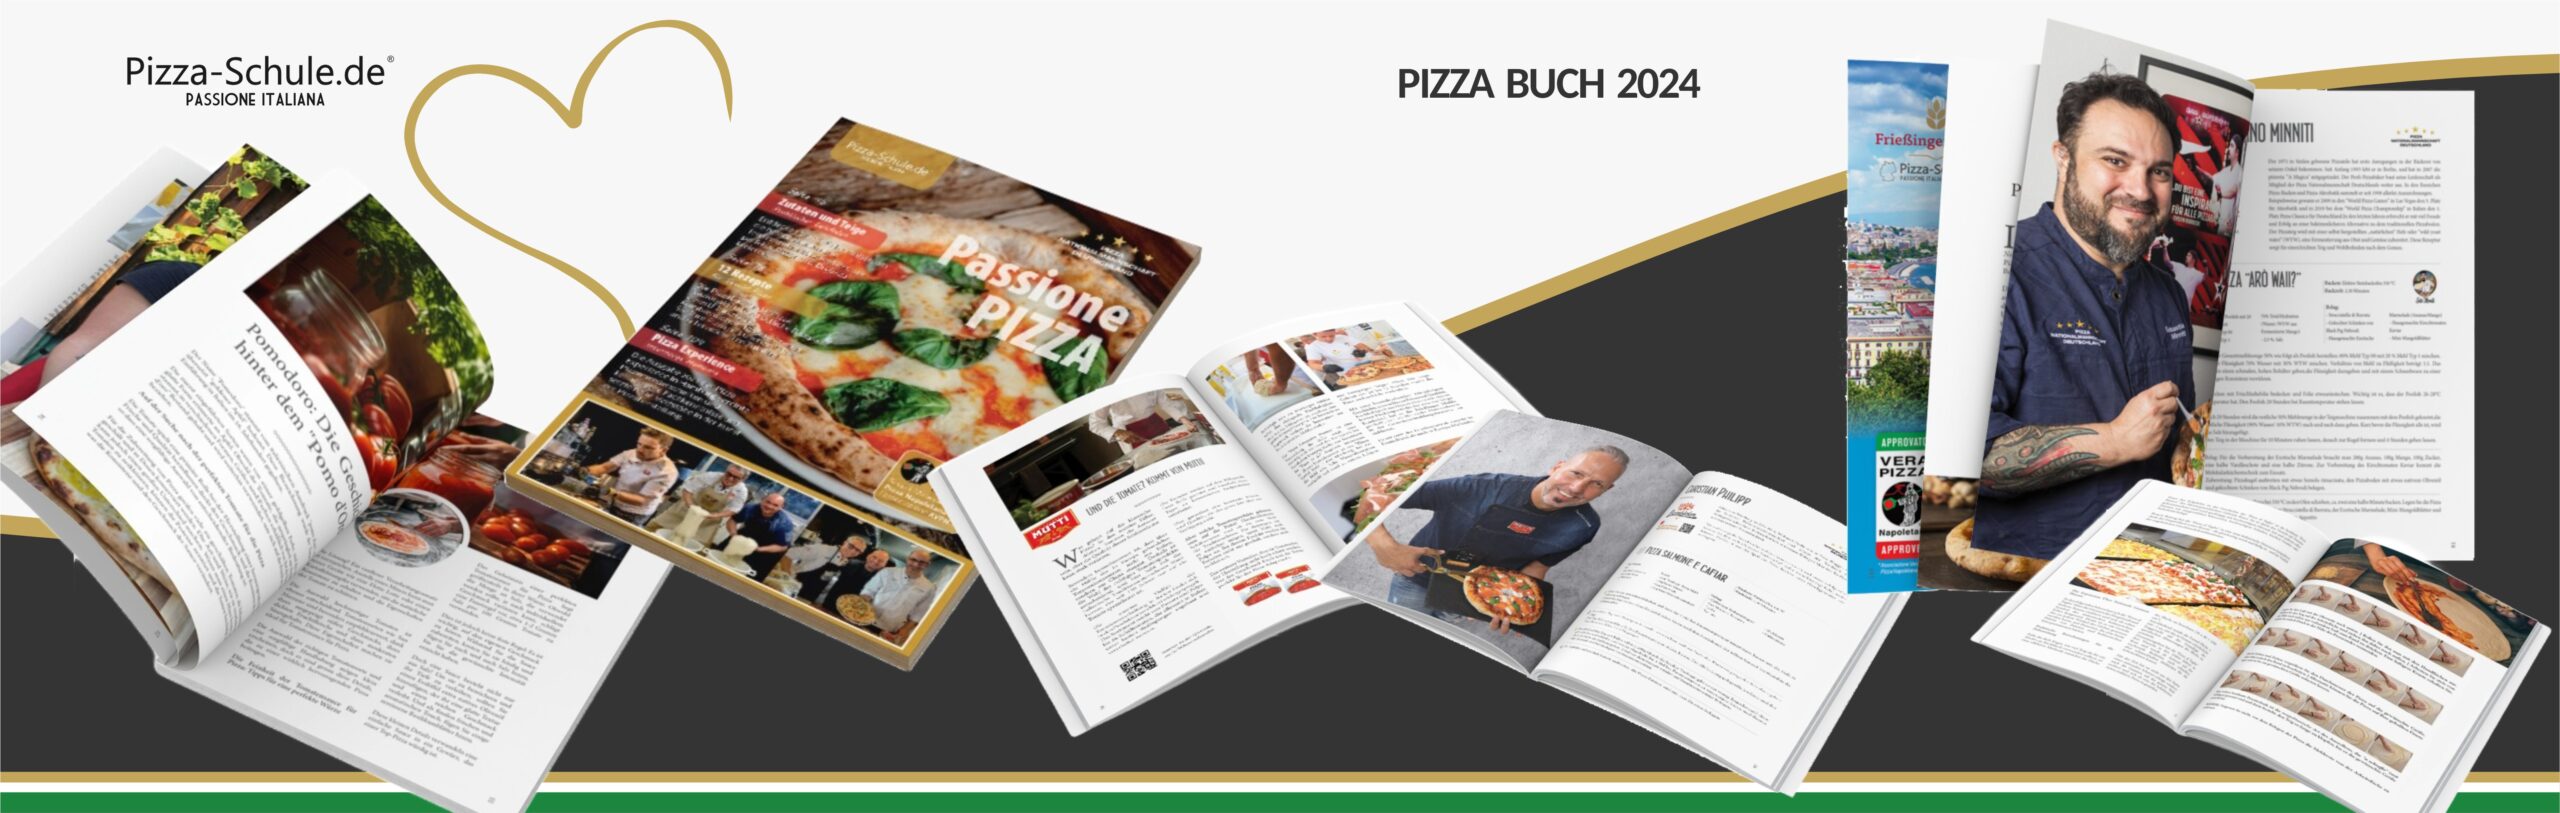 Pizzabuch 2024 Pizza-Schule